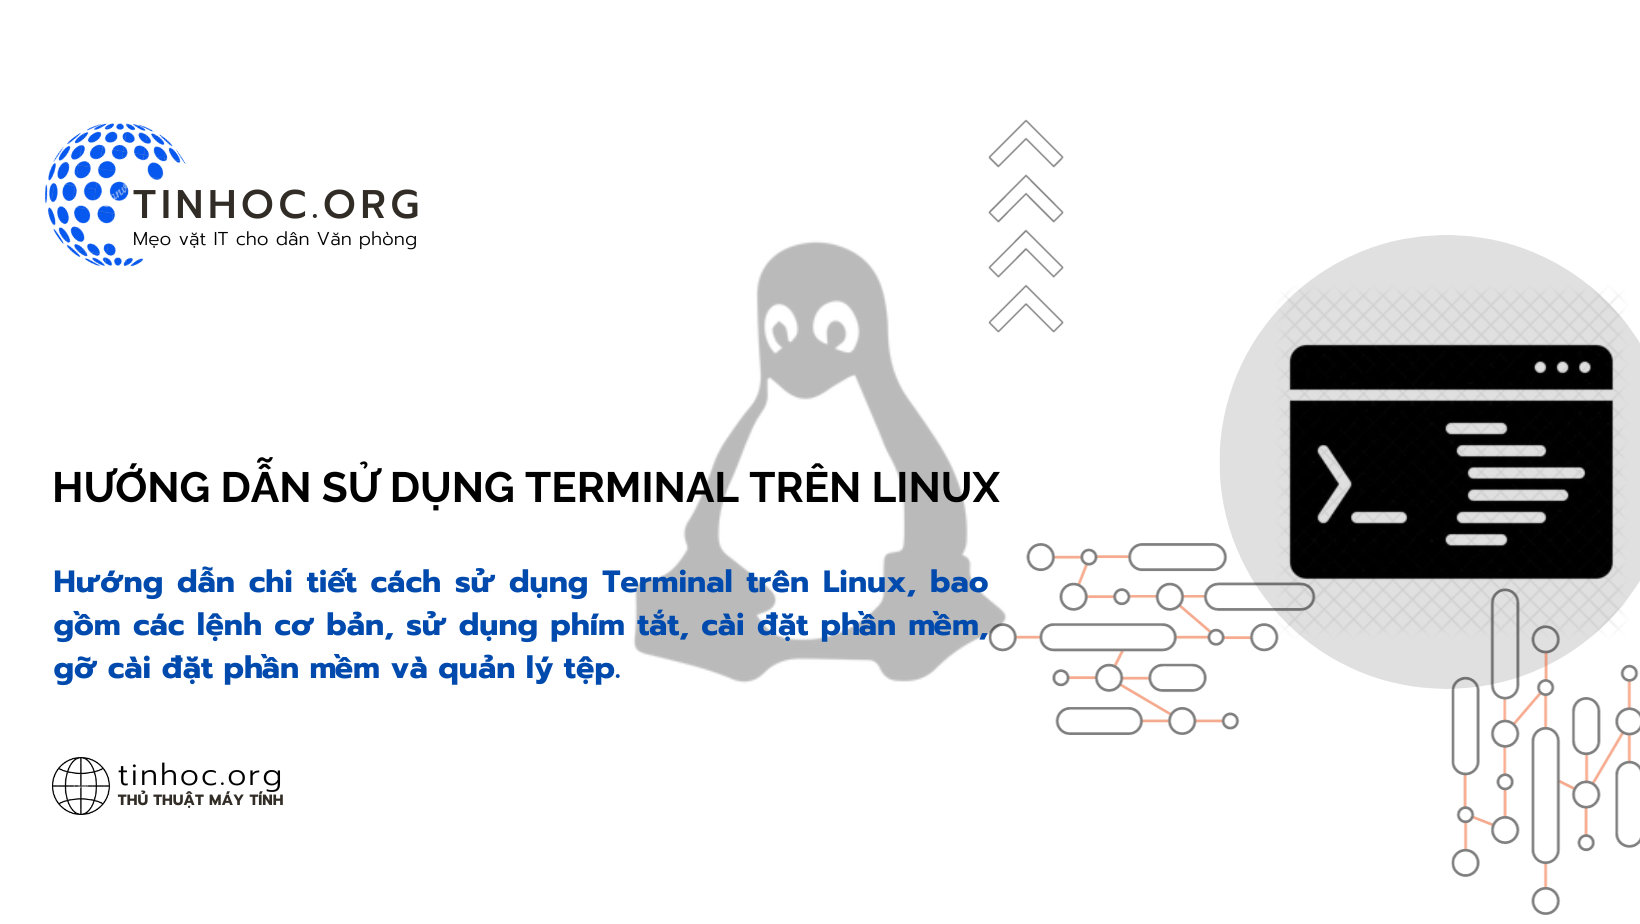 Hướng dẫn chi tiết cách sử dụng Terminal trên Linux, bao gồm các lệnh cơ bản, sử dụng phím tắt, cài đặt phần mềm, gỡ cài đặt phần mềm và quản lý tệp.